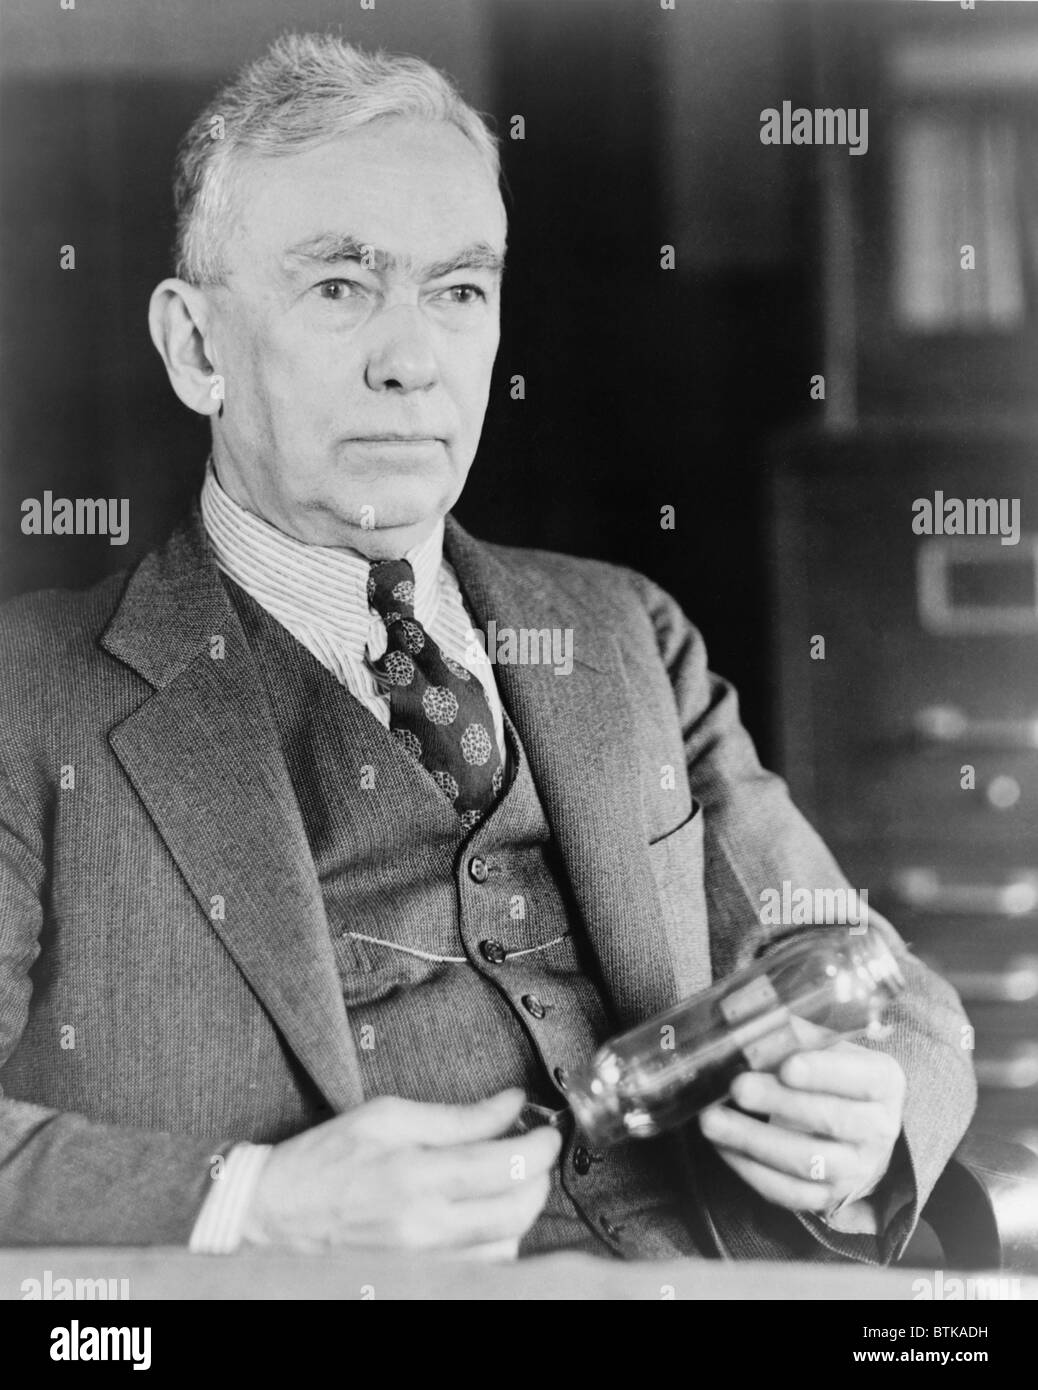 Frank Conrad (1874-1941), Radiopionier, Baujahr 1916 seinen ersten Sendungen als Amateur. Er entwickelt die erste Westinghouse-Radiosendung des US-Wahlergebnisse am 2. November 1920. Stockfoto